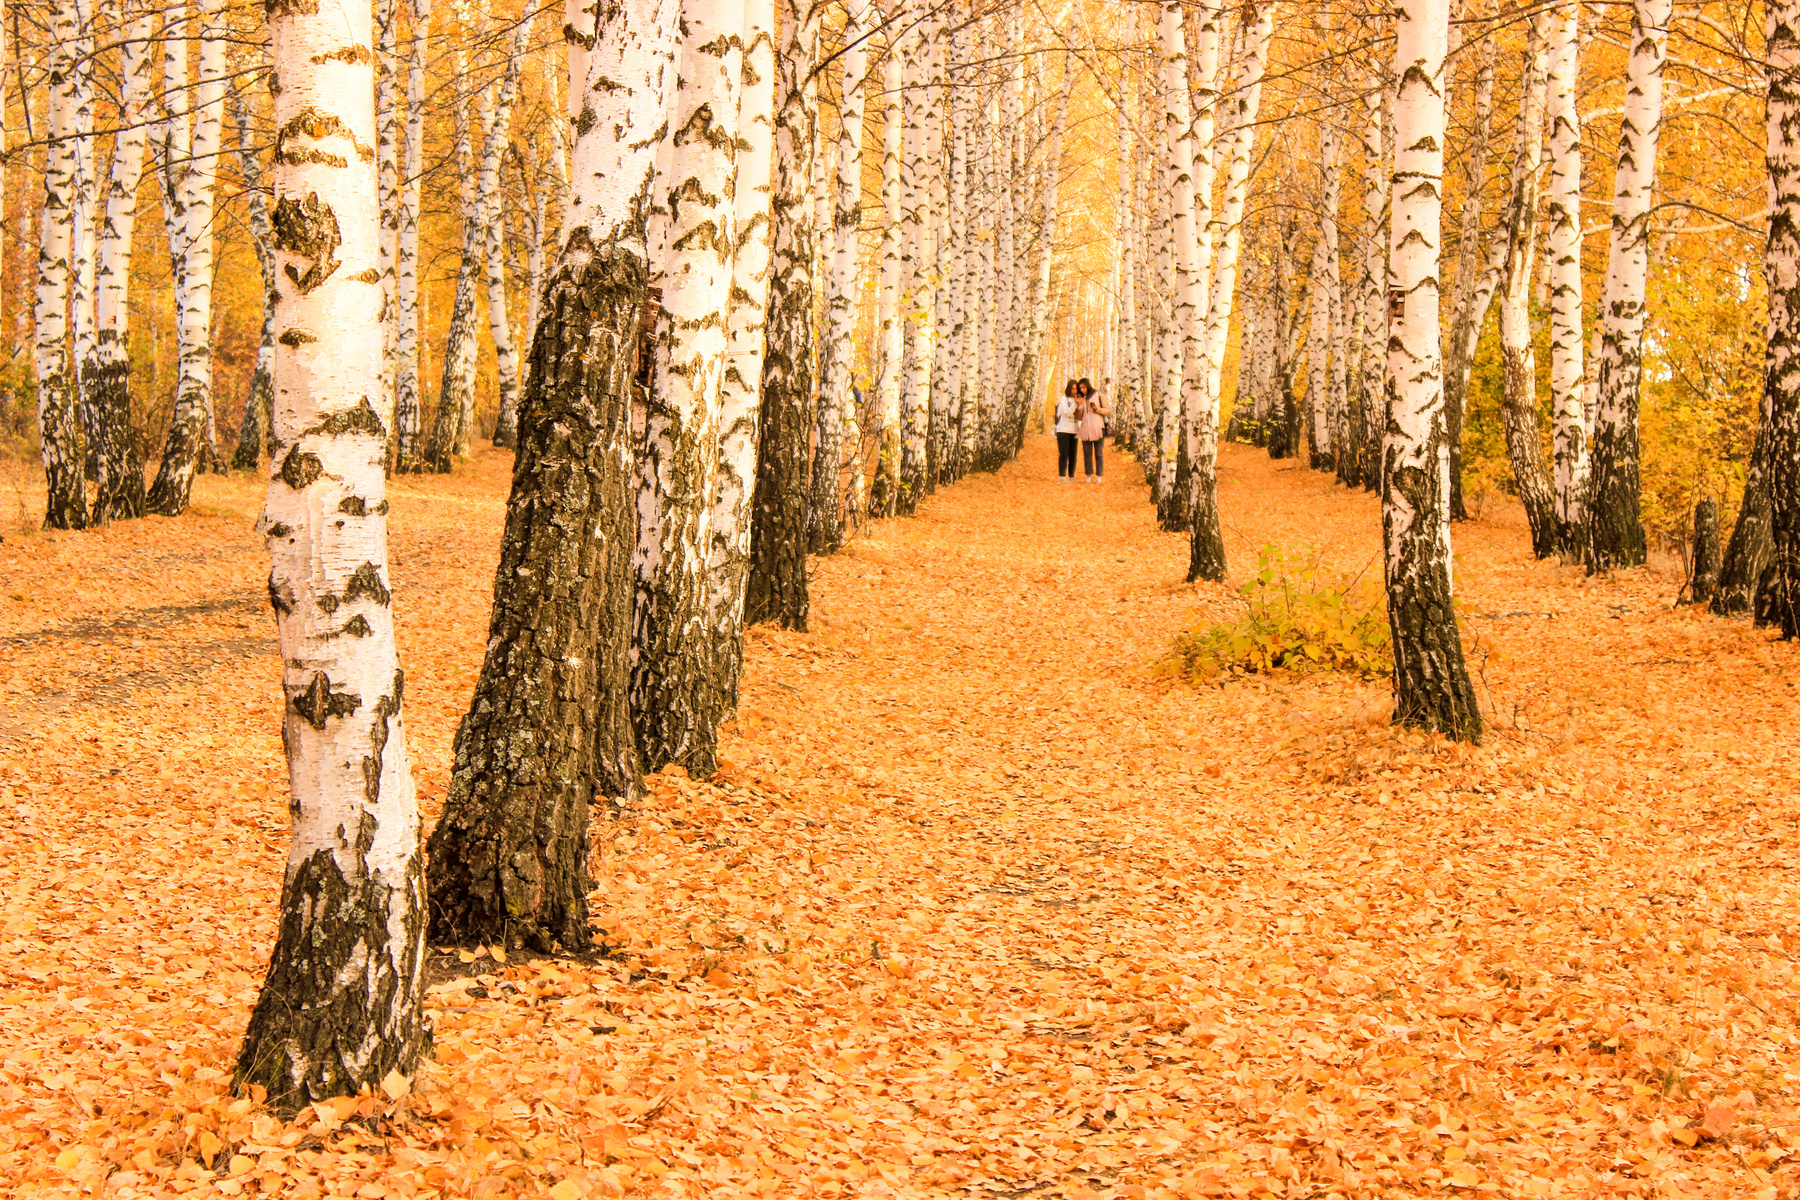 Прогулки по золотому ковру октября. Саратов природный парк природа Пейзаж осень октябрь листопад лес Кумысная поляна золотая березы березовая роща